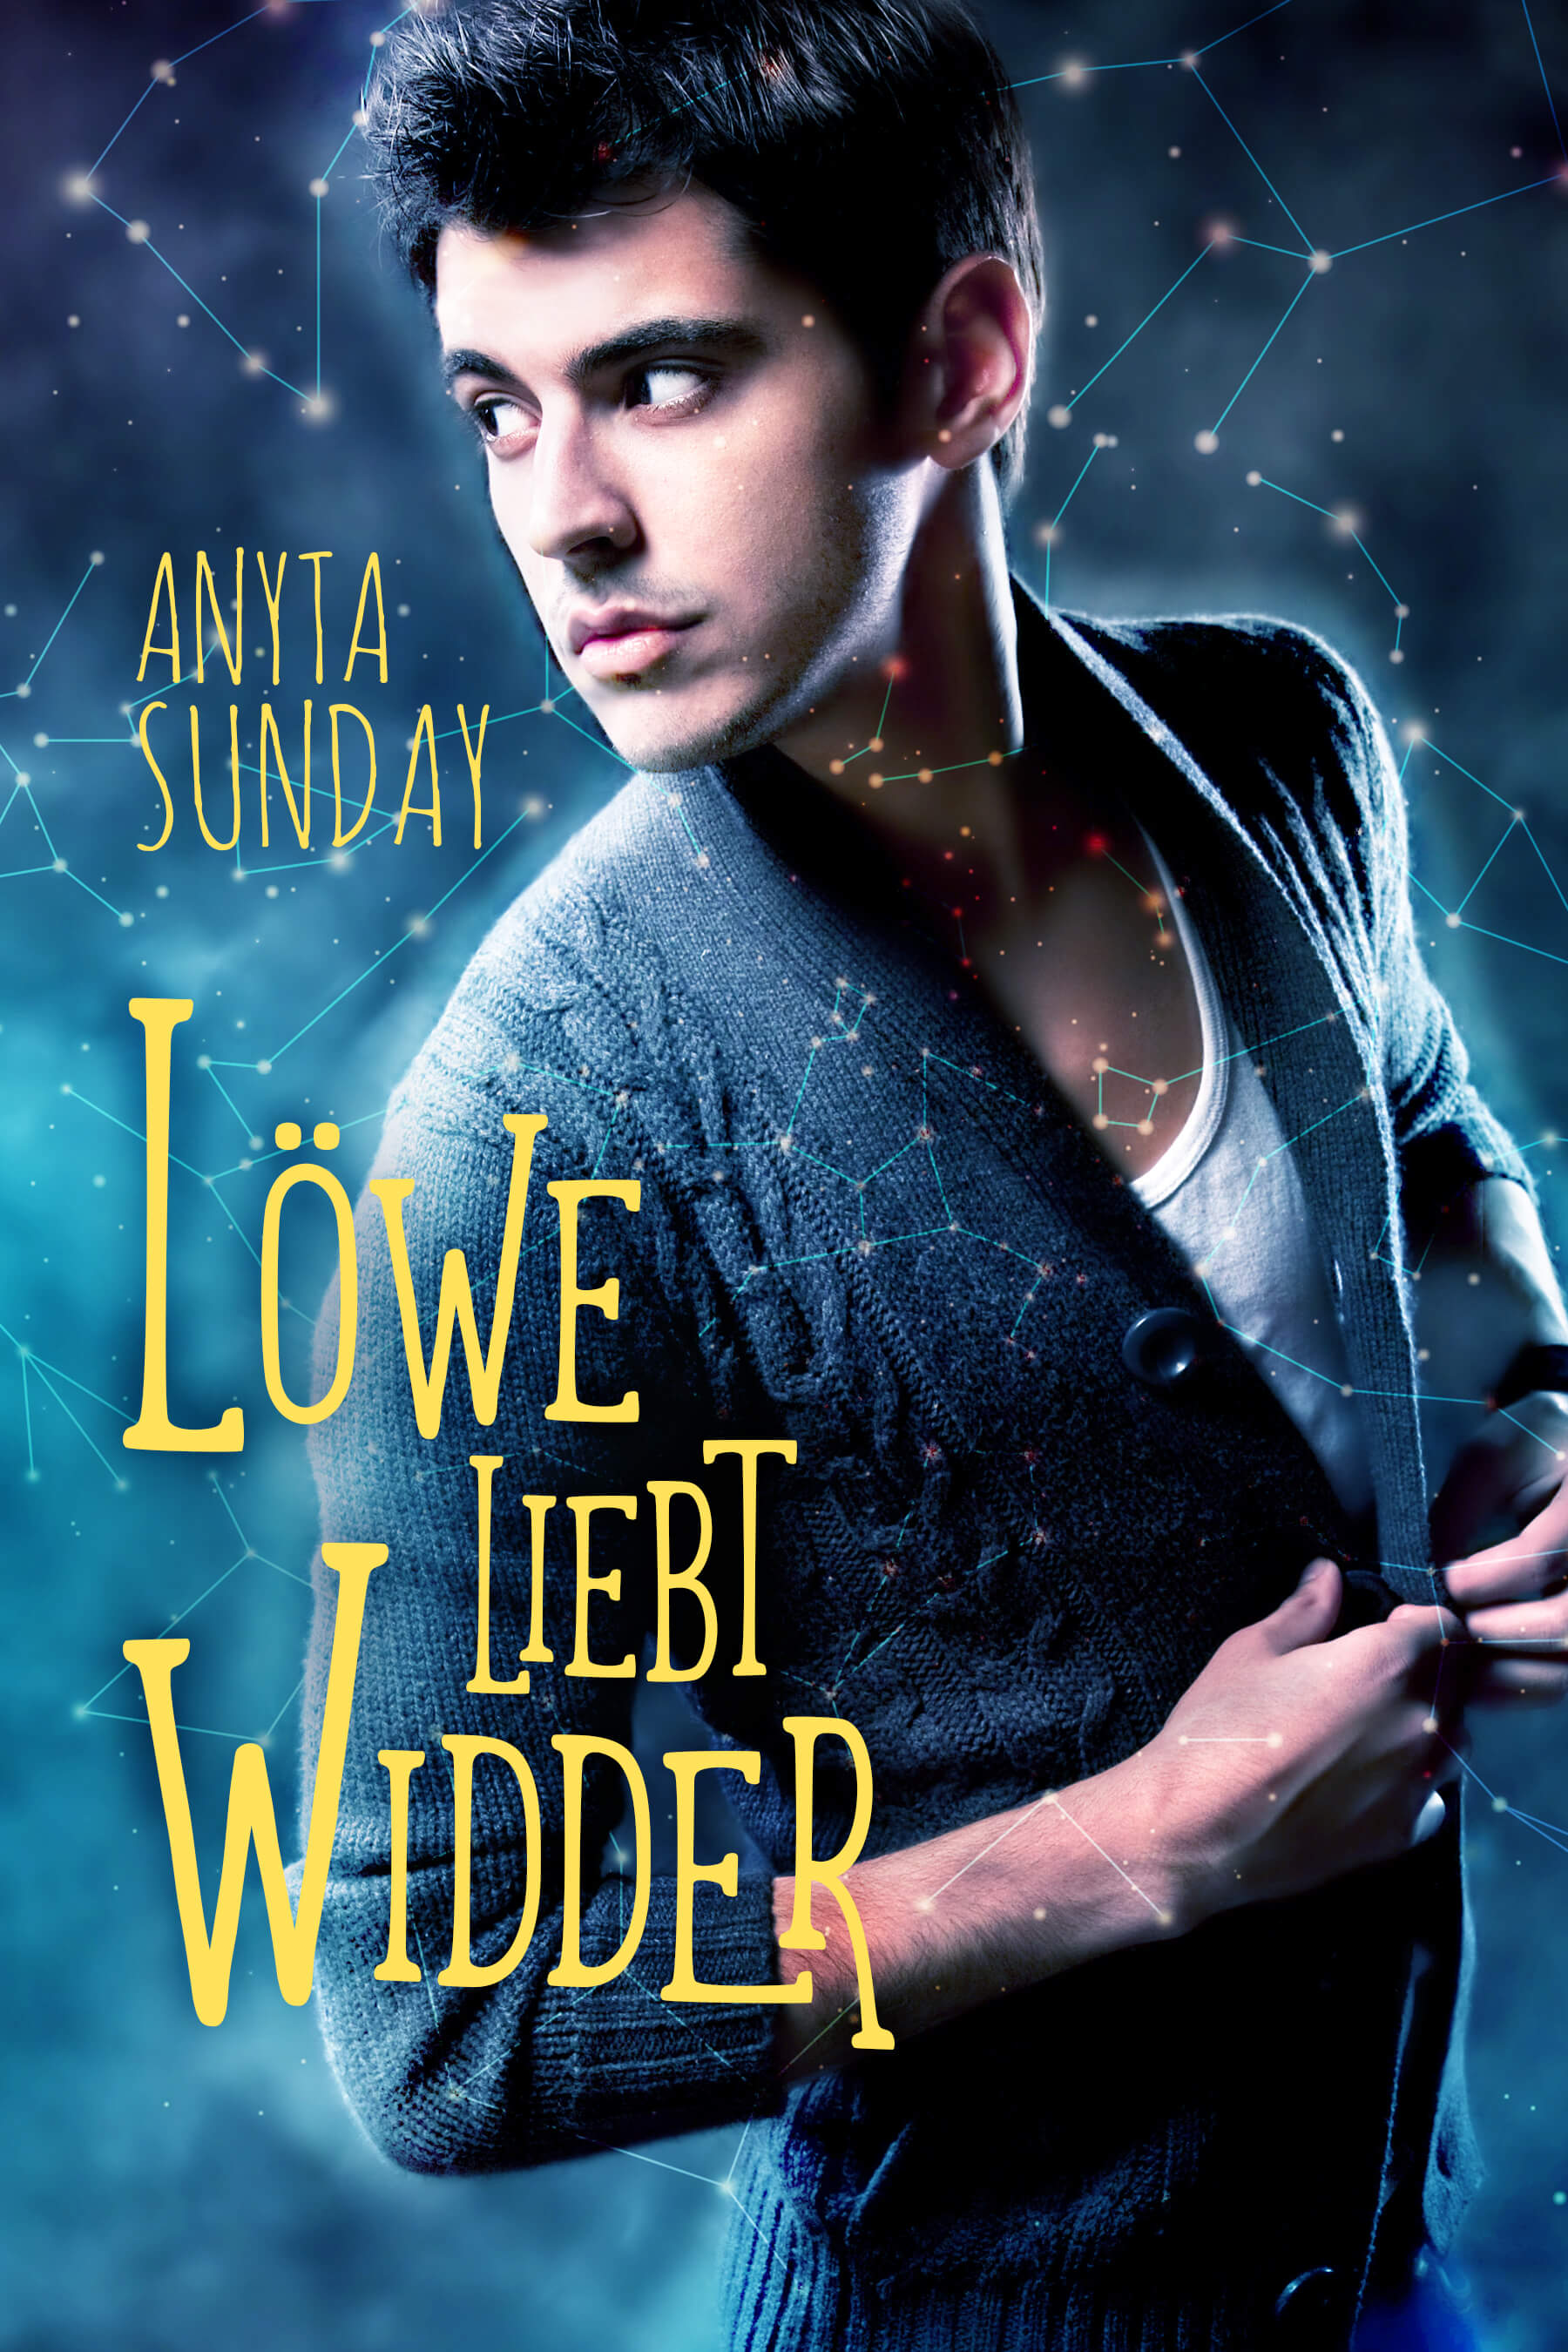 Löwe liebt Widder, die deutsche Übersetzung der schwulen Romanze "Leo Loves Aries" von Anyta Sunday